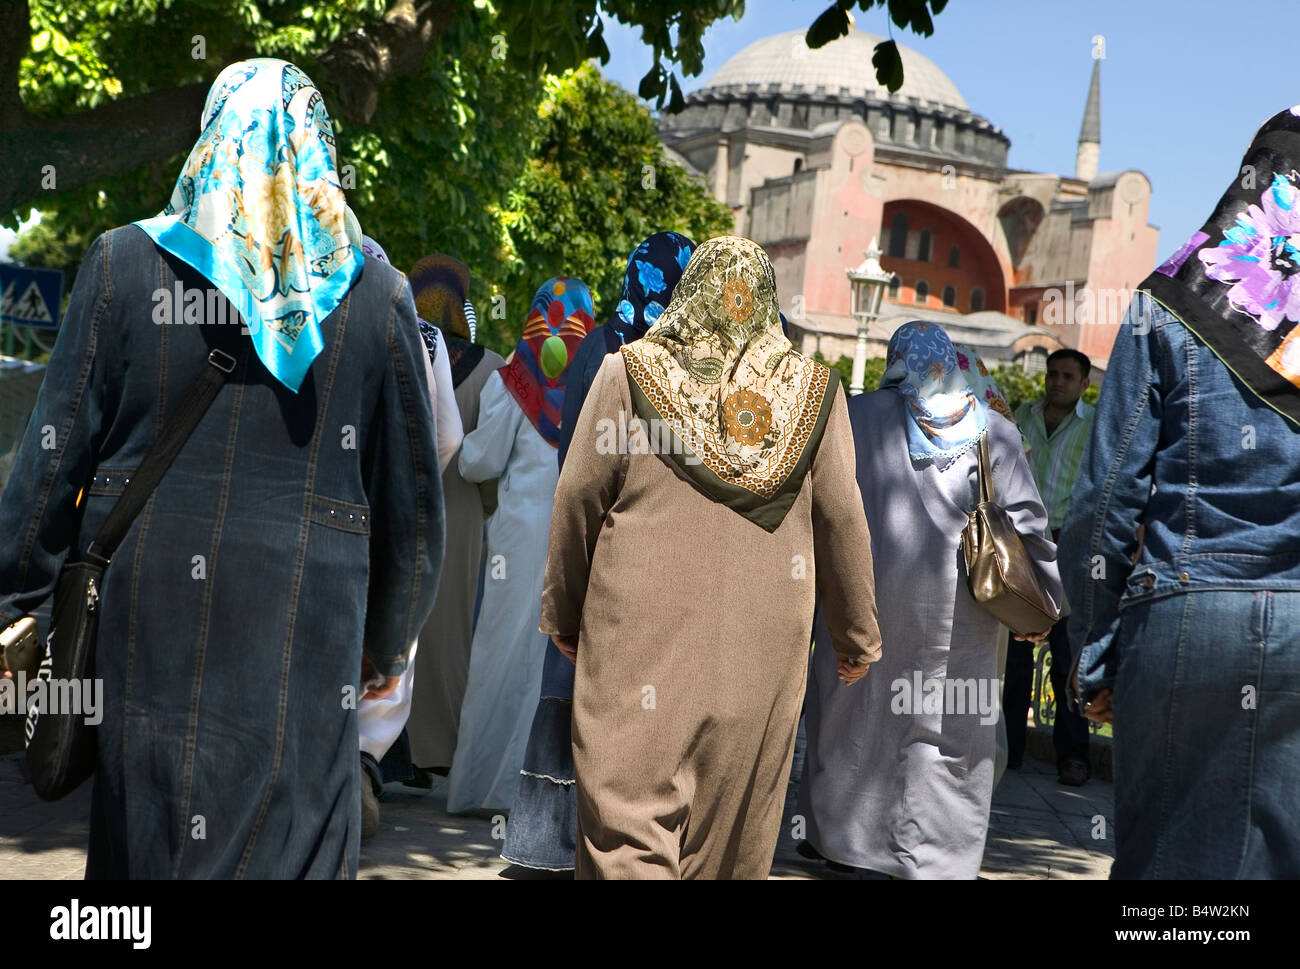 Islamic women in Istanbul Stock Photo